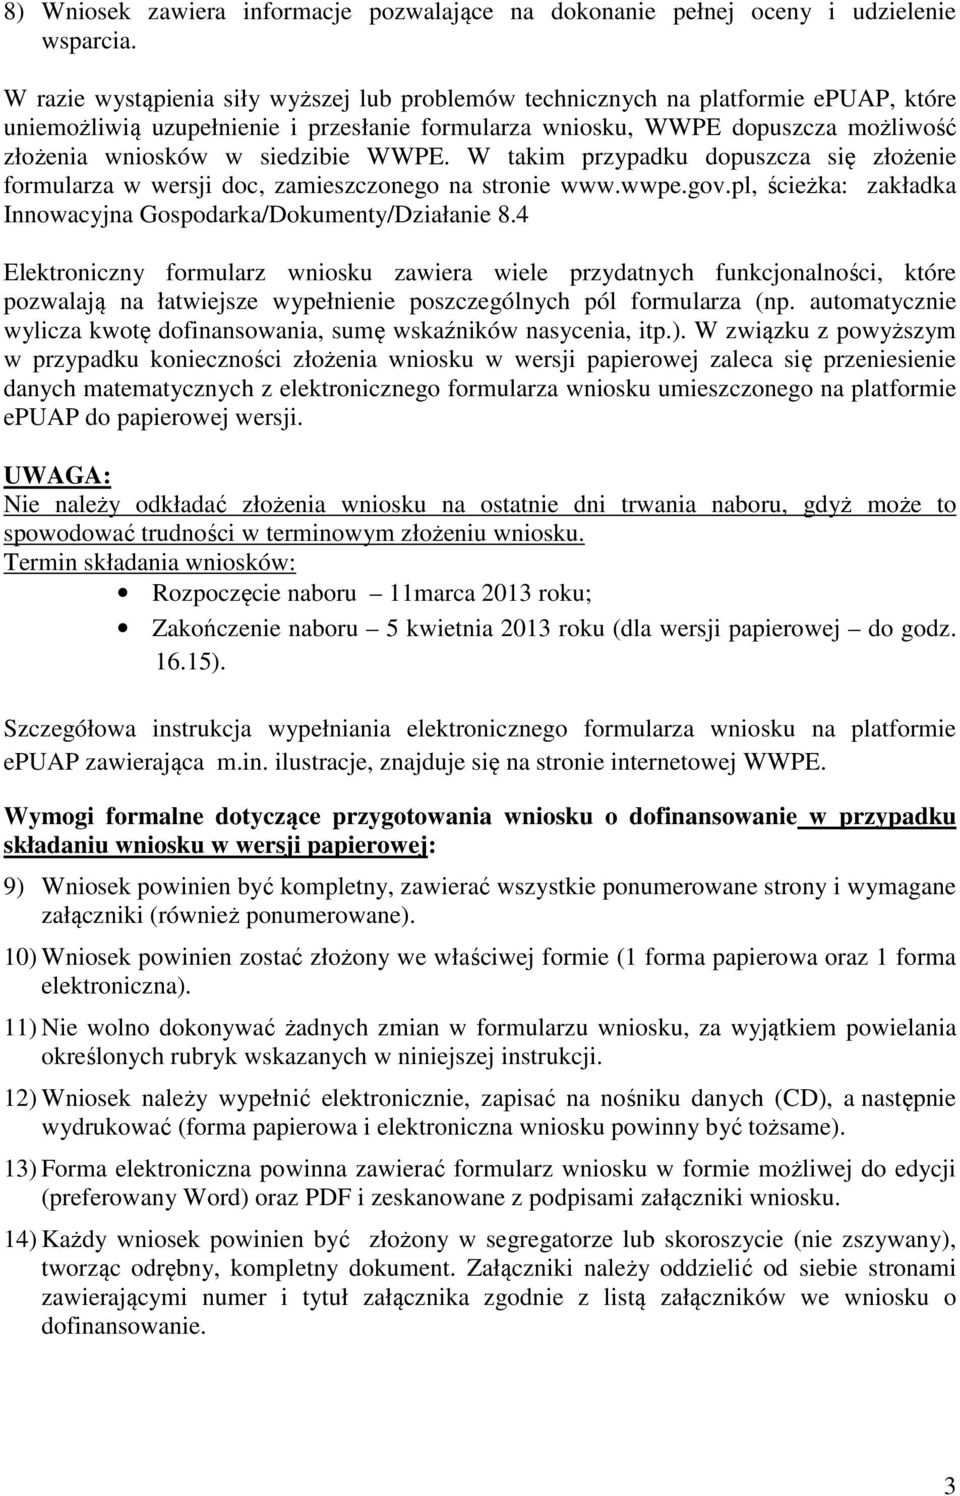 siedzibie WWPE. W takim przypadku dopuszcza się złożenie formularza w wersji doc, zamieszczonego na stronie www.wwpe.gov.pl, ścieżka: zakładka Innowacyjna Gospodarka/Dokumenty/Działanie 8.